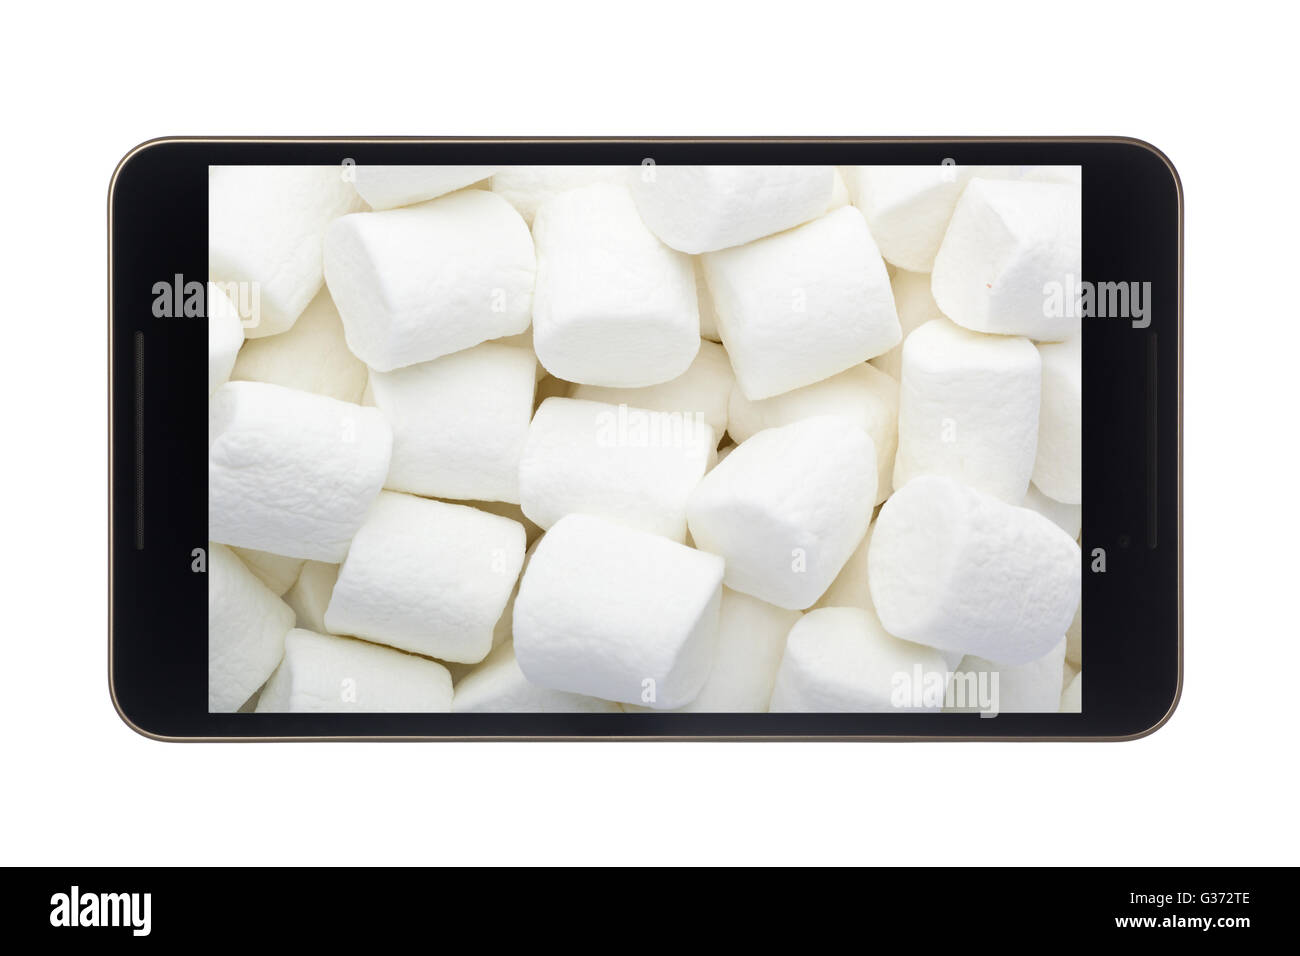 Eibisch in Android-Smartphone - Konzept für Betriebssystem Android Marshmallow Stockfoto